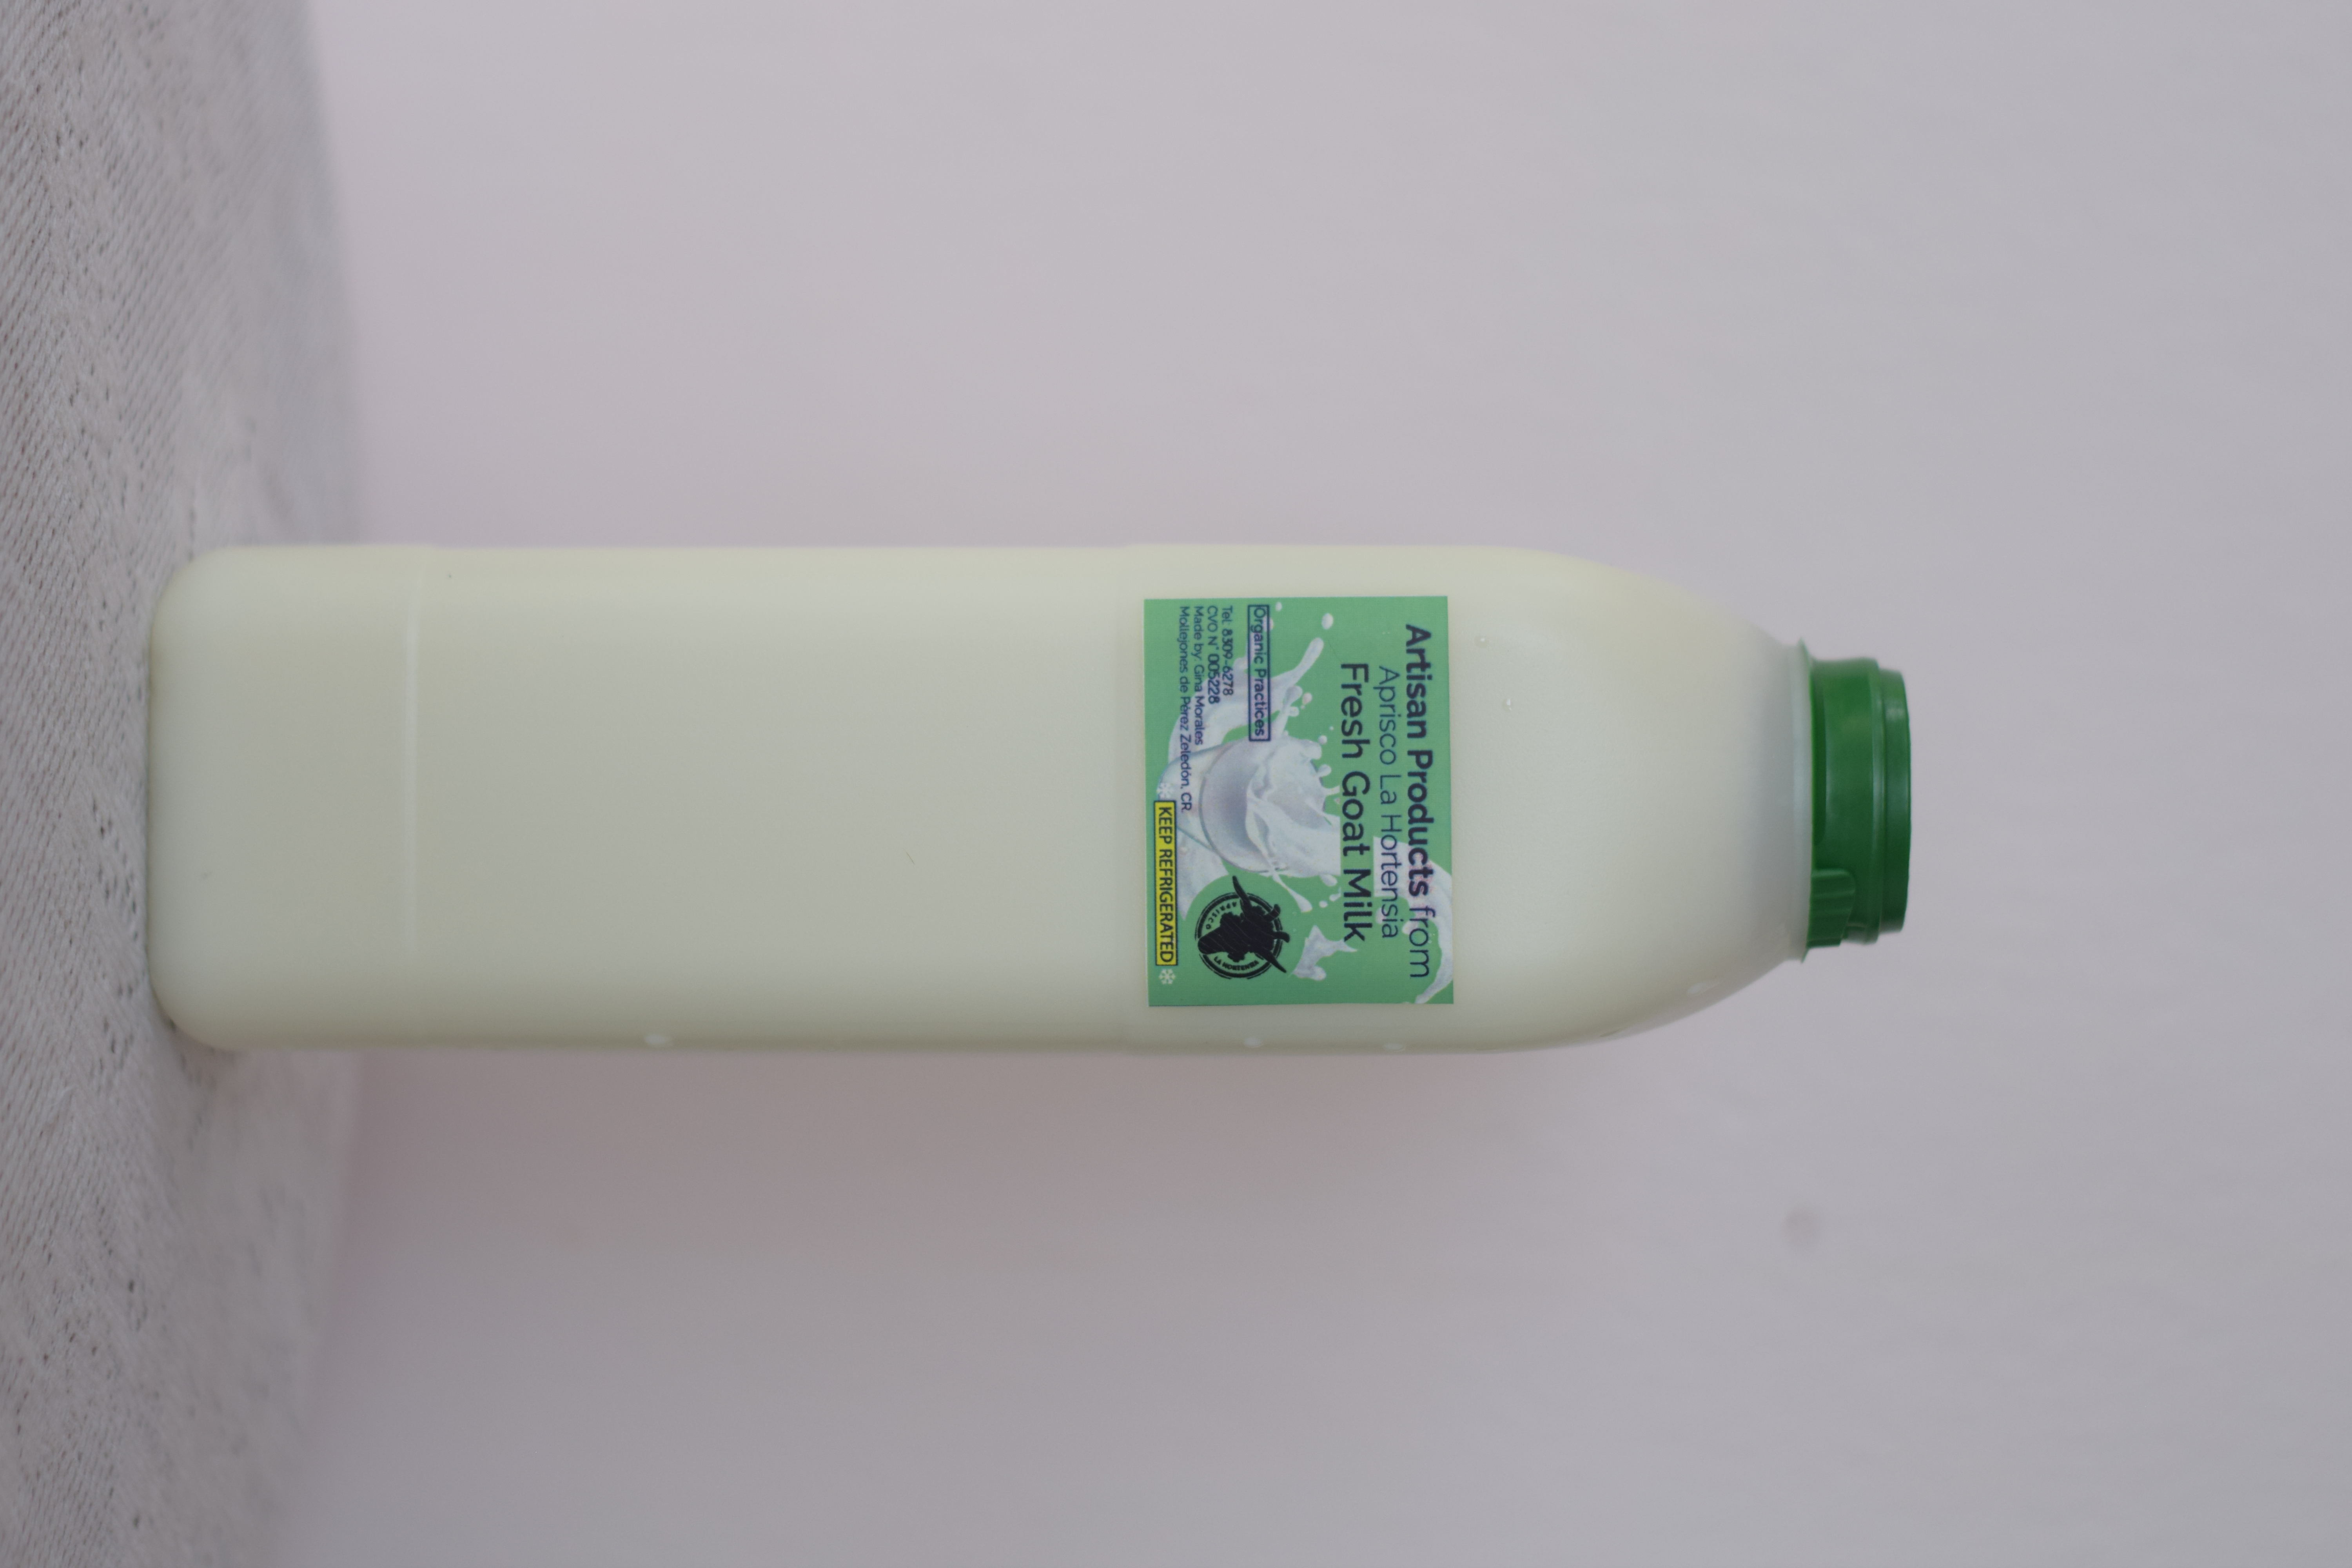 Goat Fresh Milk in Plastic (Leche Fresca).